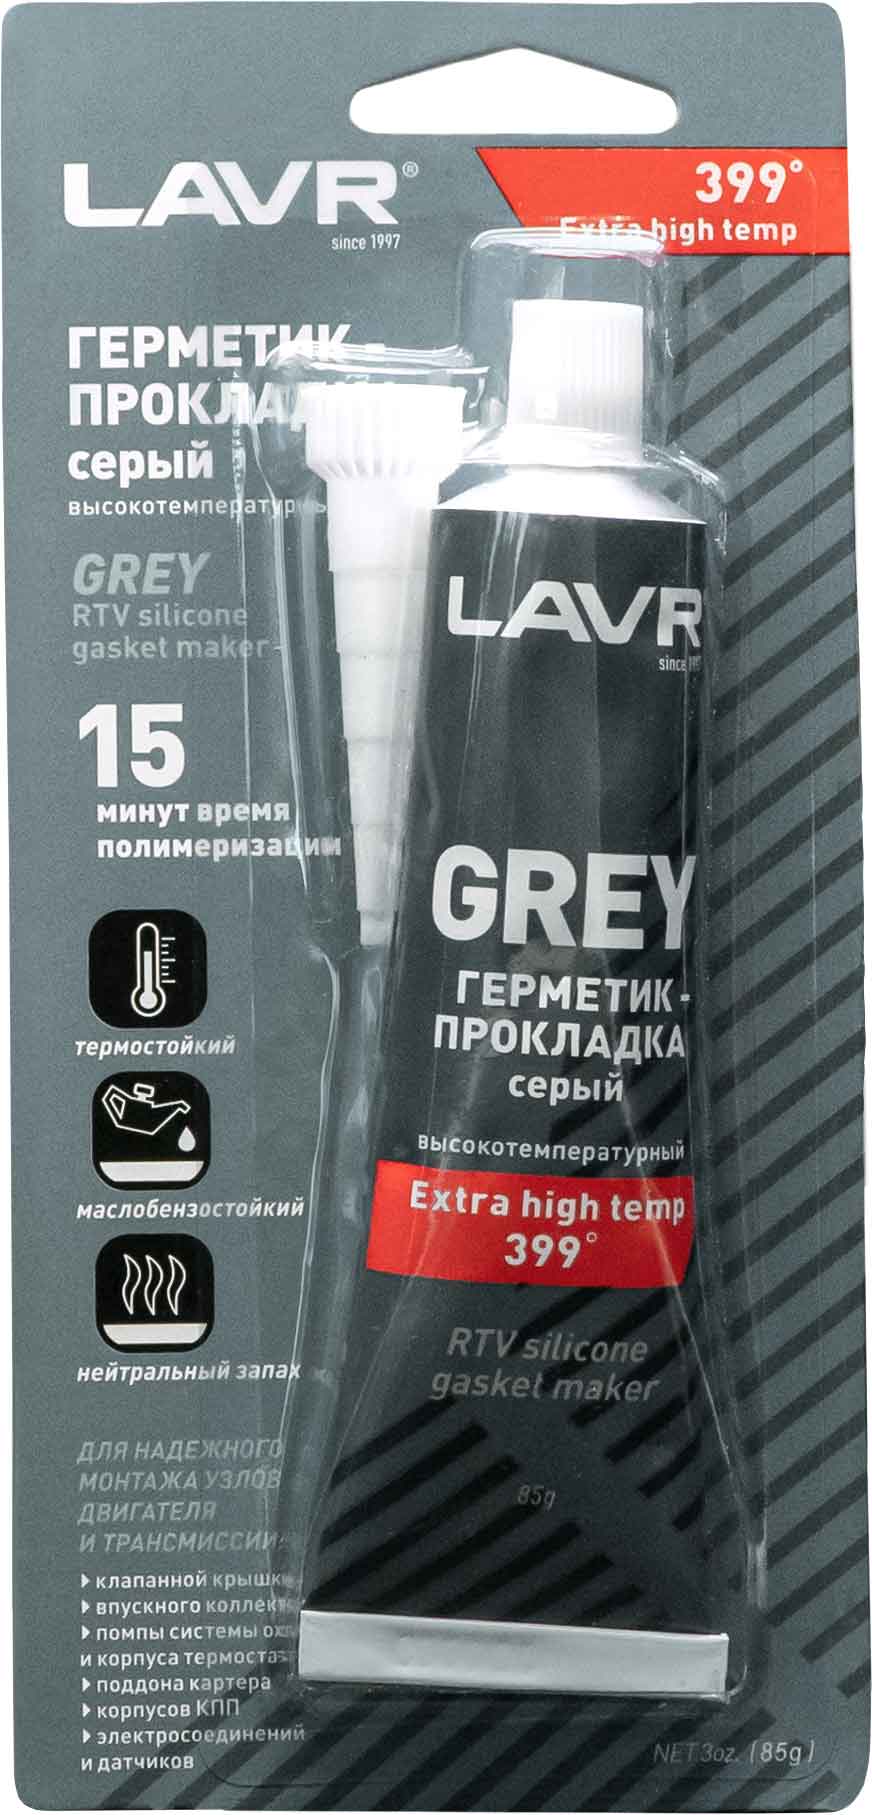 Герметик-прокладка серый высокотемпературный Grey, 85 г Ln1739